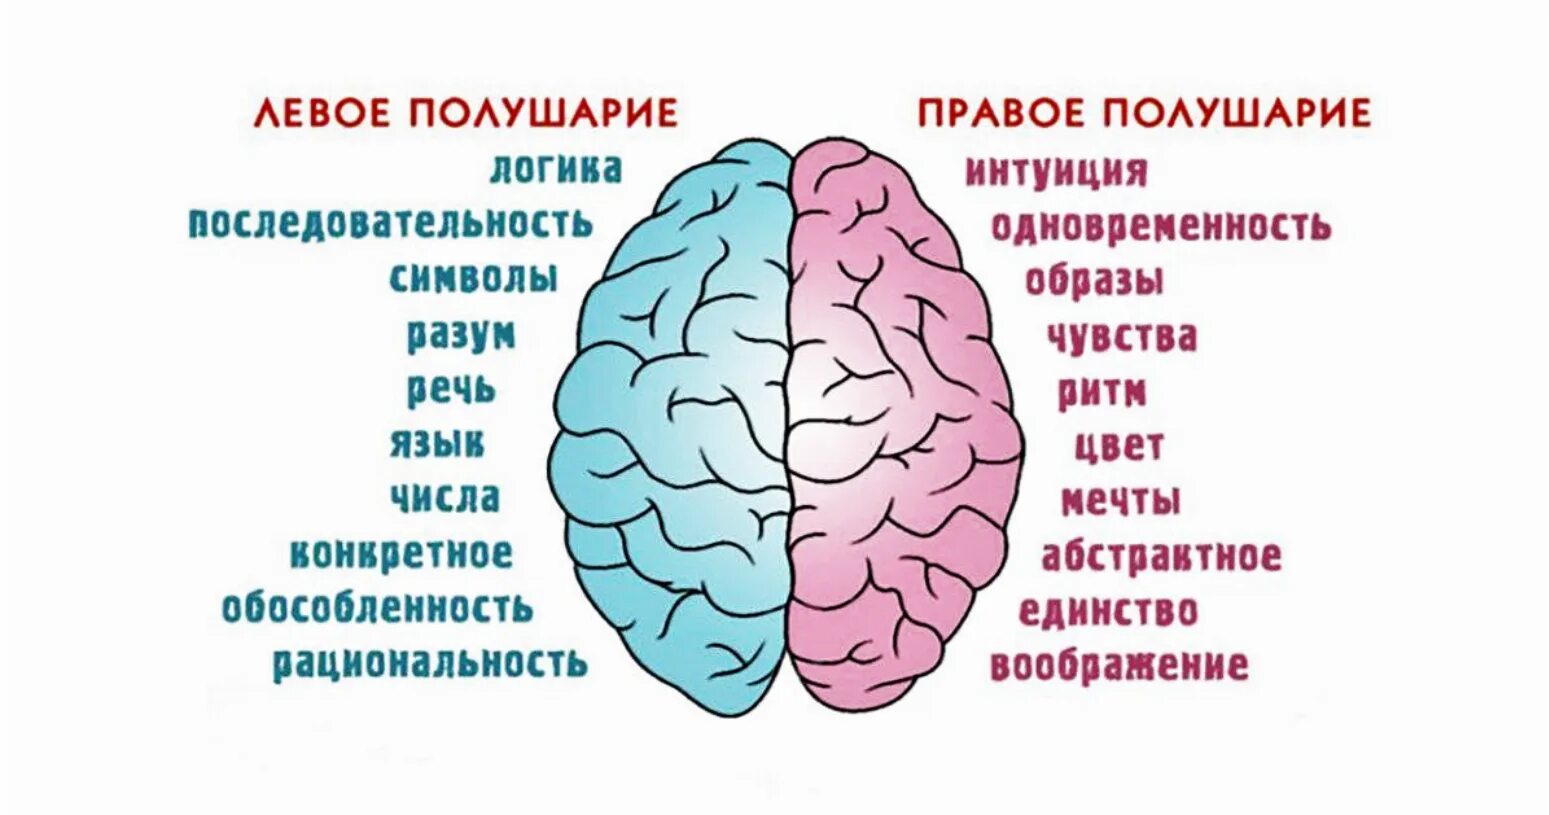 Левое полушарие какая рука. Полушария мозга девое т правое. За что отвечает правое полушарие. За что отвечают полушария головного мозга человека левое и правое. За какие процессы головного мозга отвечает правое полушарие.